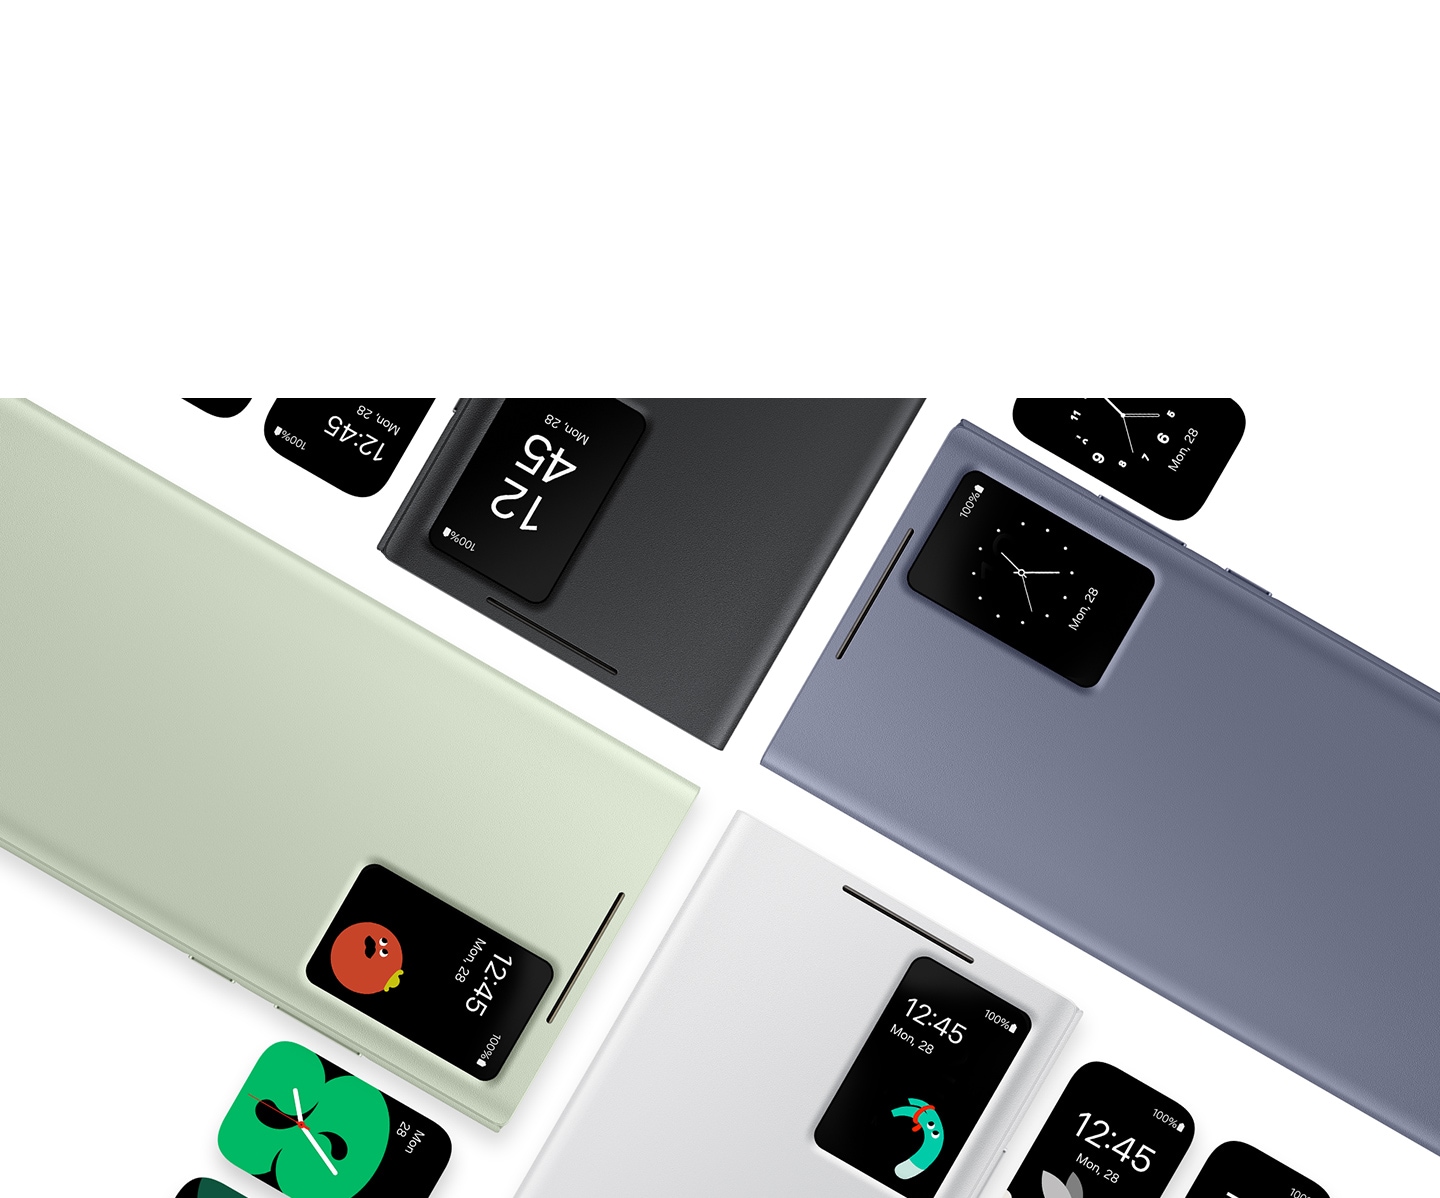 Чехлы Smart View Wallet чёрного, светло-зелёного, фиолетового и белого цветов располагаются параллельно друг другу. В окошке чехла отображаются время и дата на смартфоне Galaxy S24 Ultra без необходимости открывать крышку.